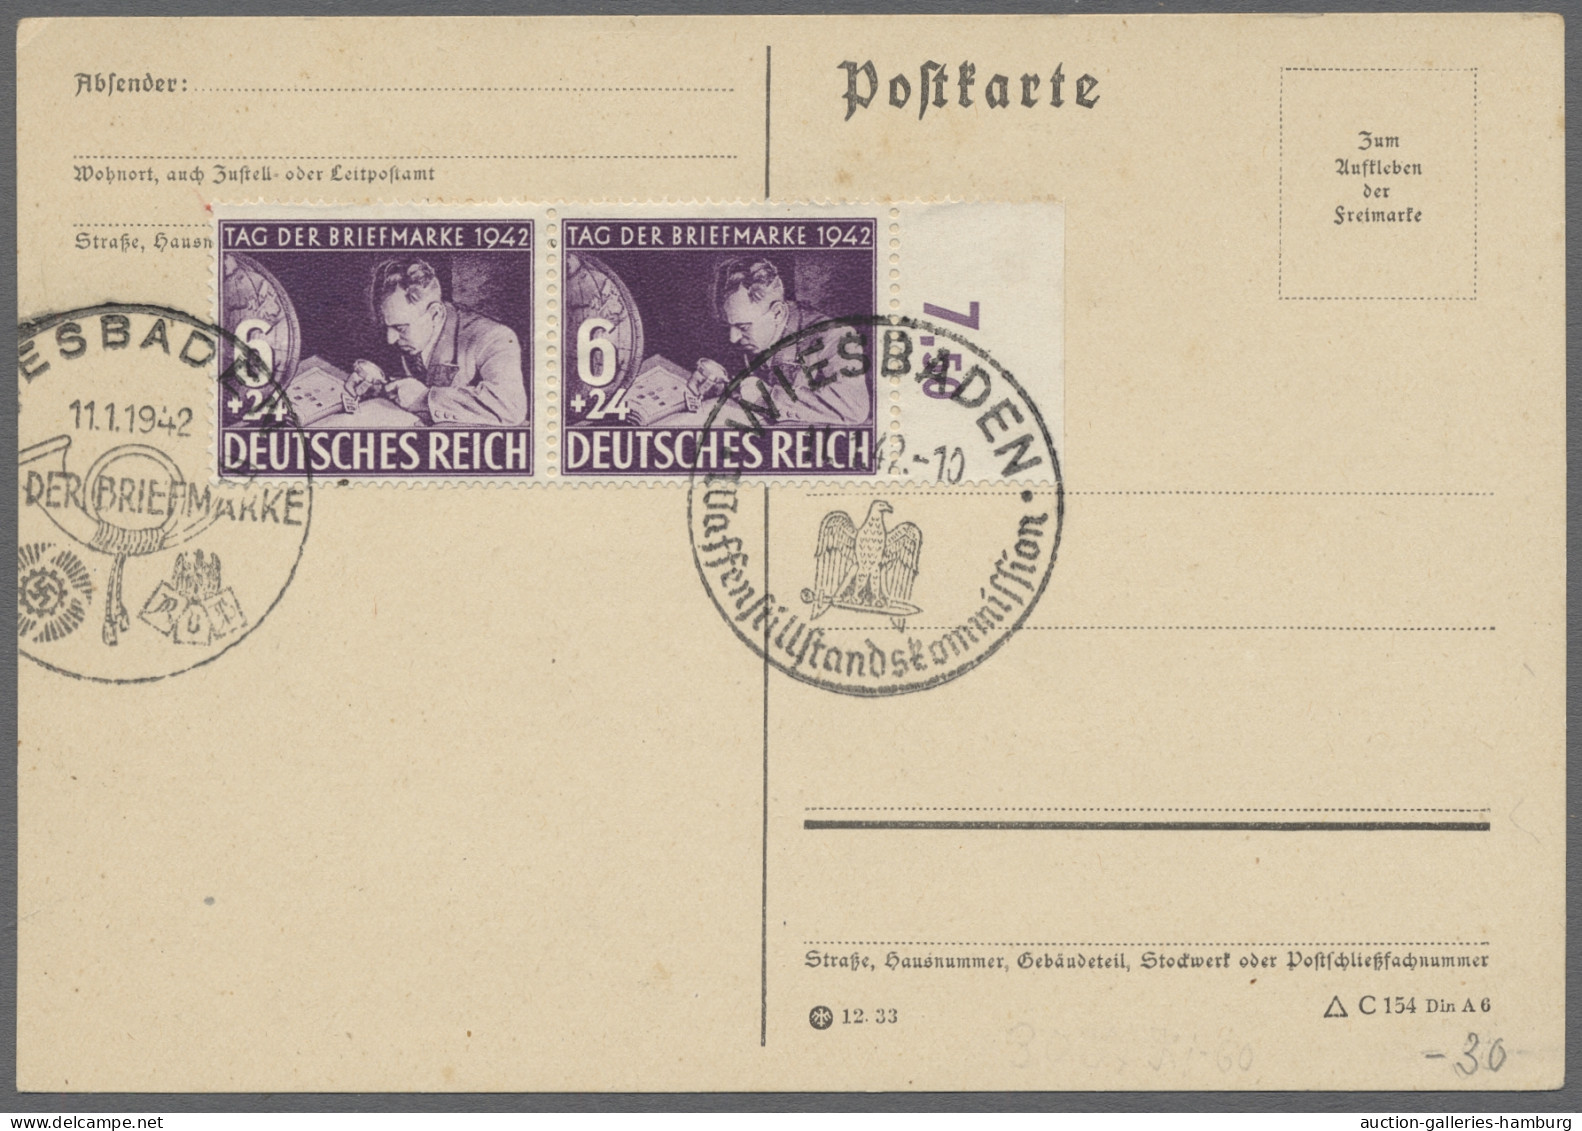 Deutsches Reich - 3. Reich: 1942, Tag der Briefmarke, 147 Belege und einige Brie